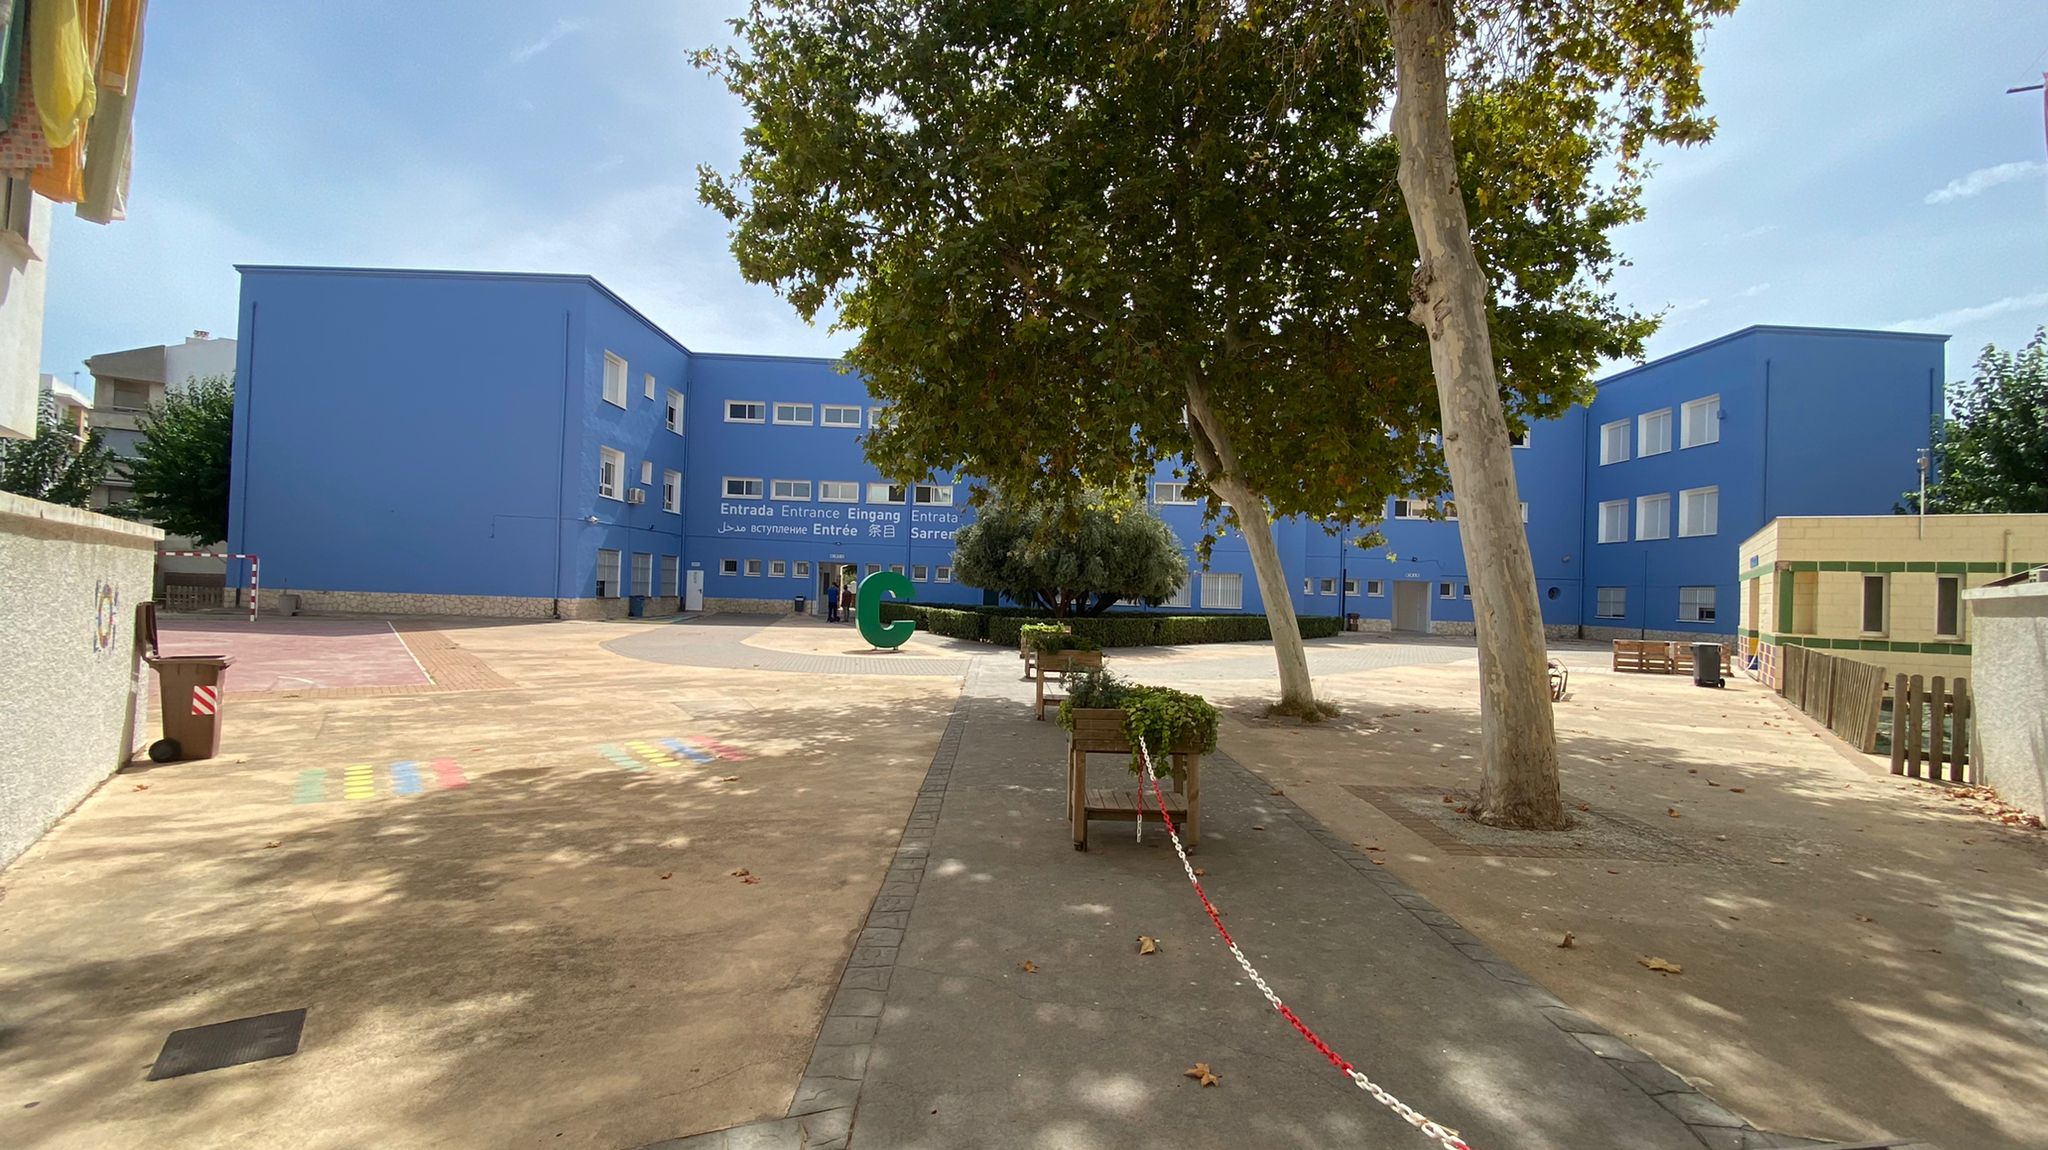 Colegio Cervantes luciendo su nueva pintura azul